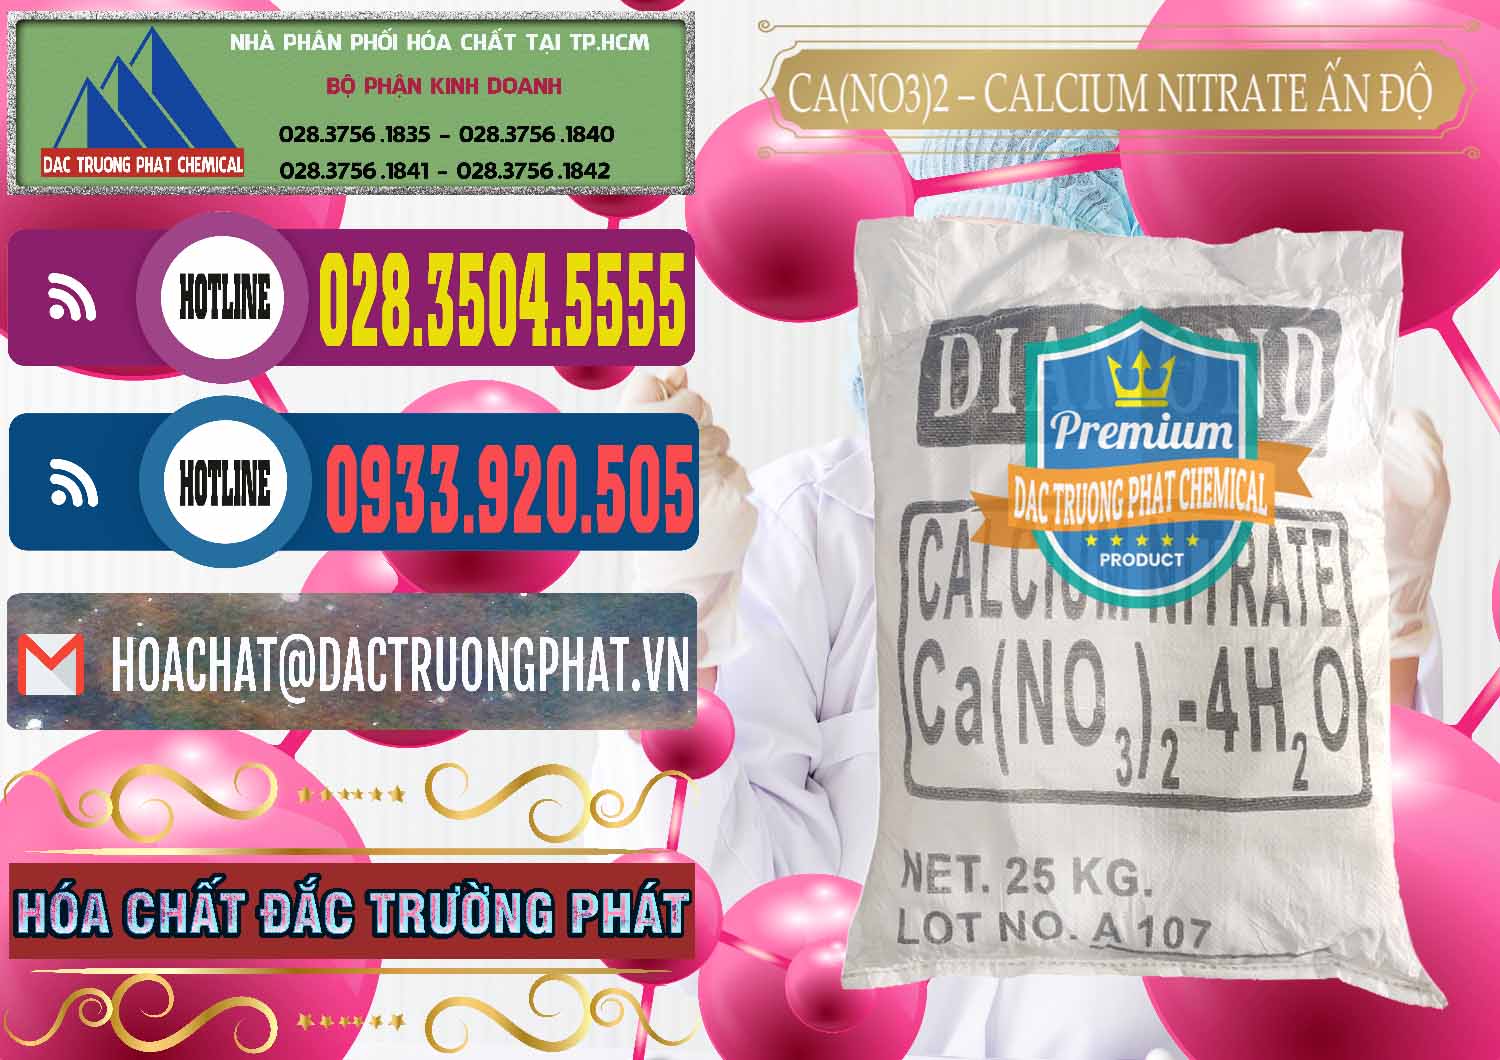 Đơn vị chuyên kinh doanh & bán CA(NO3)2 – Calcium Nitrate Ấn Độ India - 0038 - Cty chuyên kinh doanh và phân phối hóa chất tại TP.HCM - muabanhoachat.com.vn